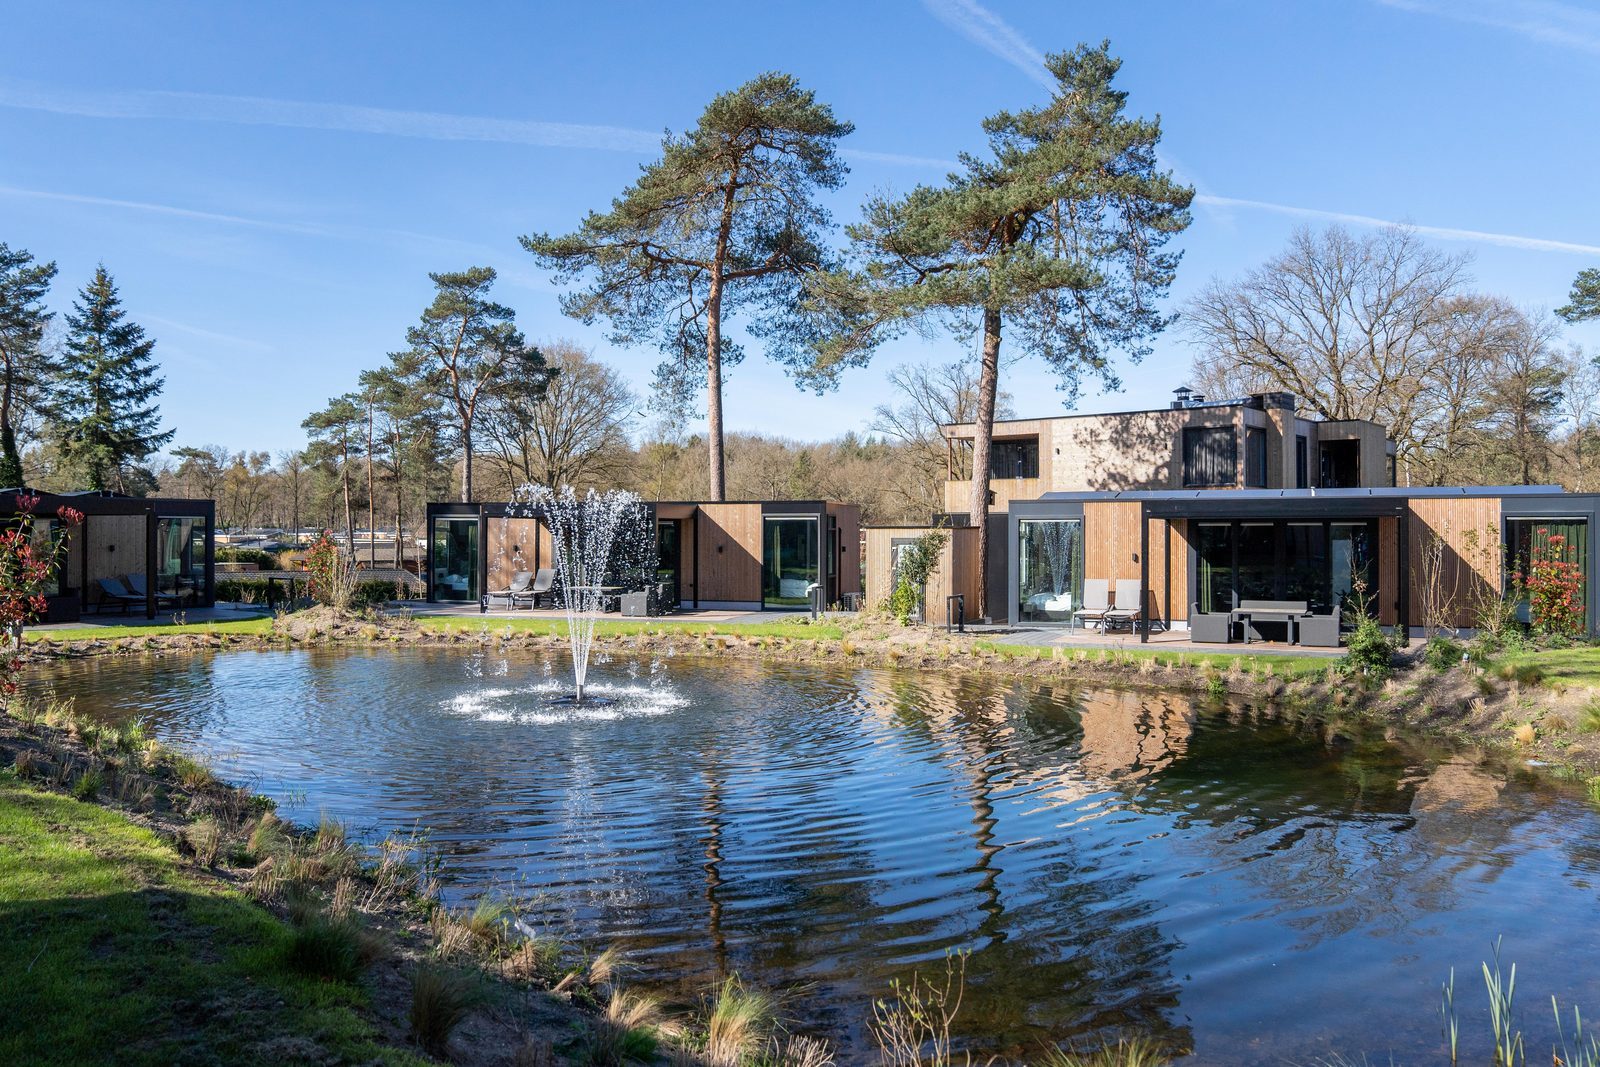 Holiday homes for sale at Recreatiepark Beekbergen